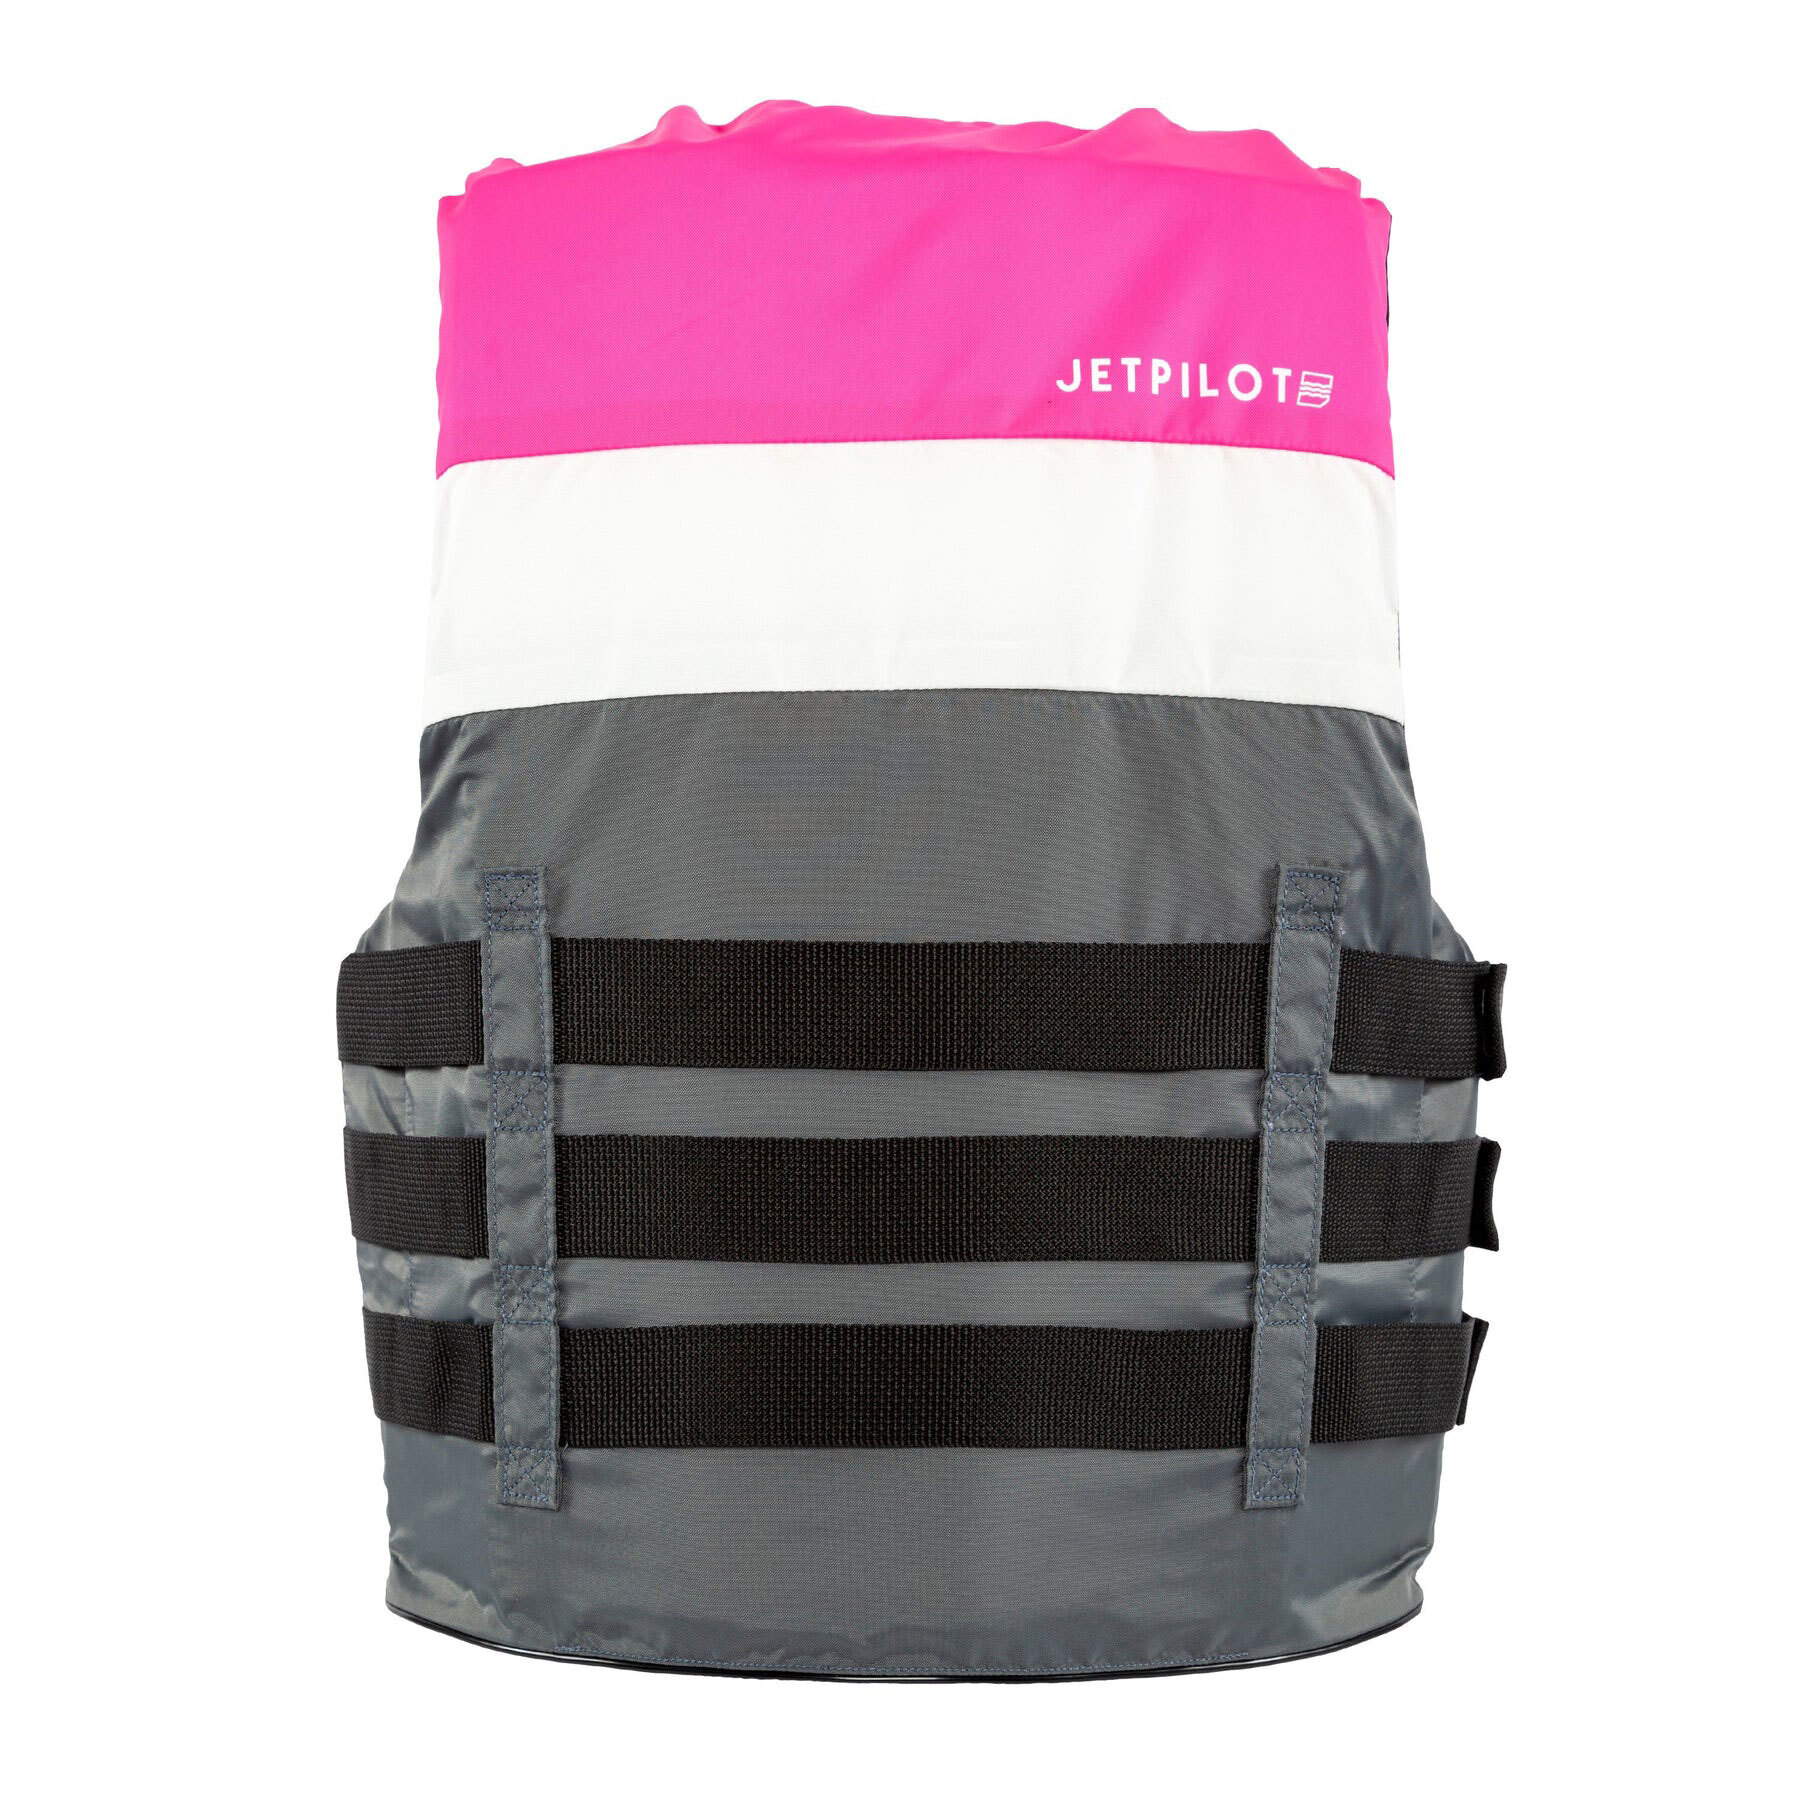 Women's JetPilot Nylon Life Jacket Large to Extra Large pink